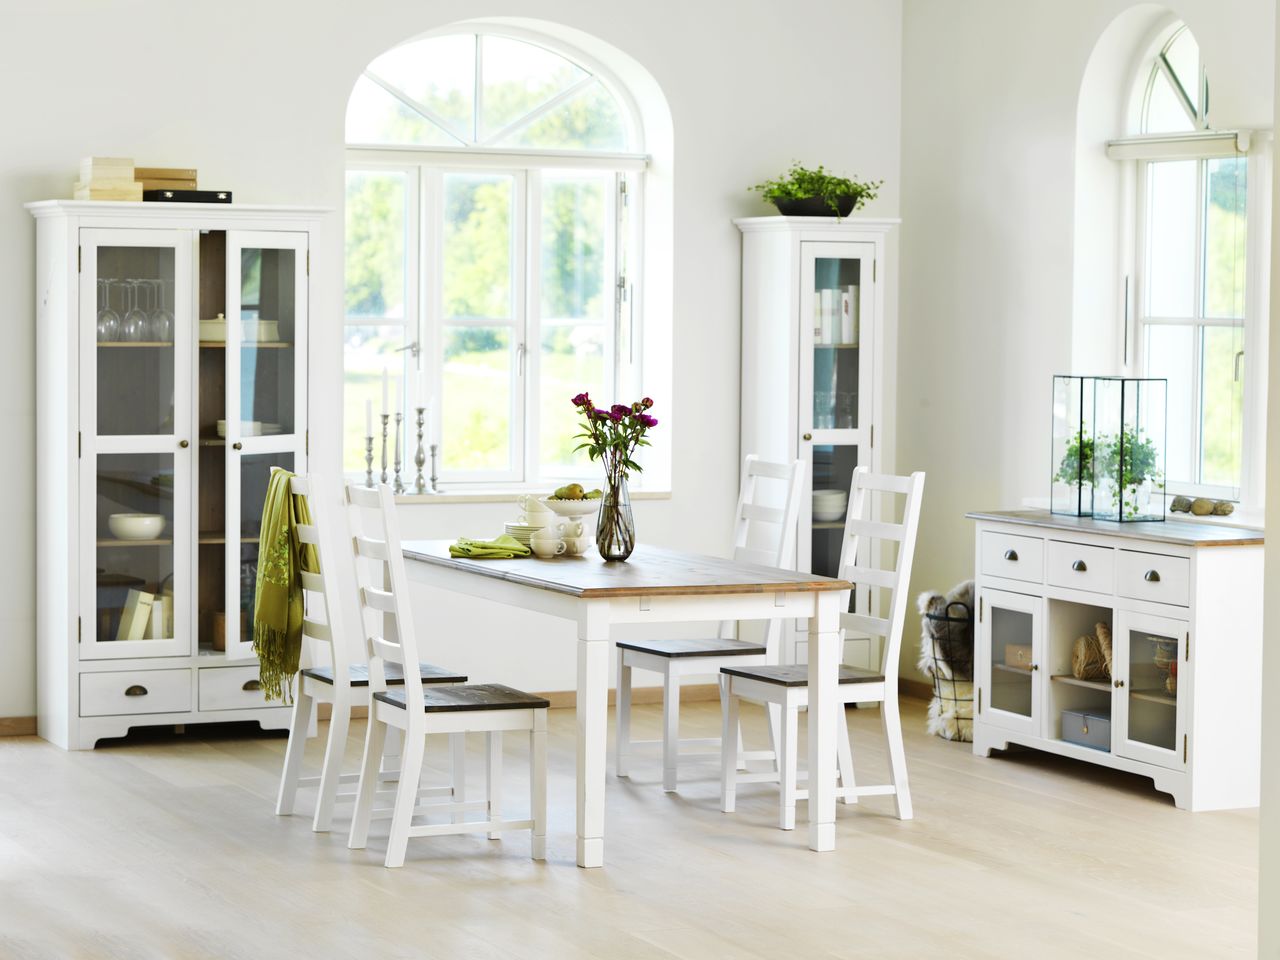 Nội thất phòng bếp hiện đại sử dụng tông màu trắng chủ đạo thanh lịch và tinh tế